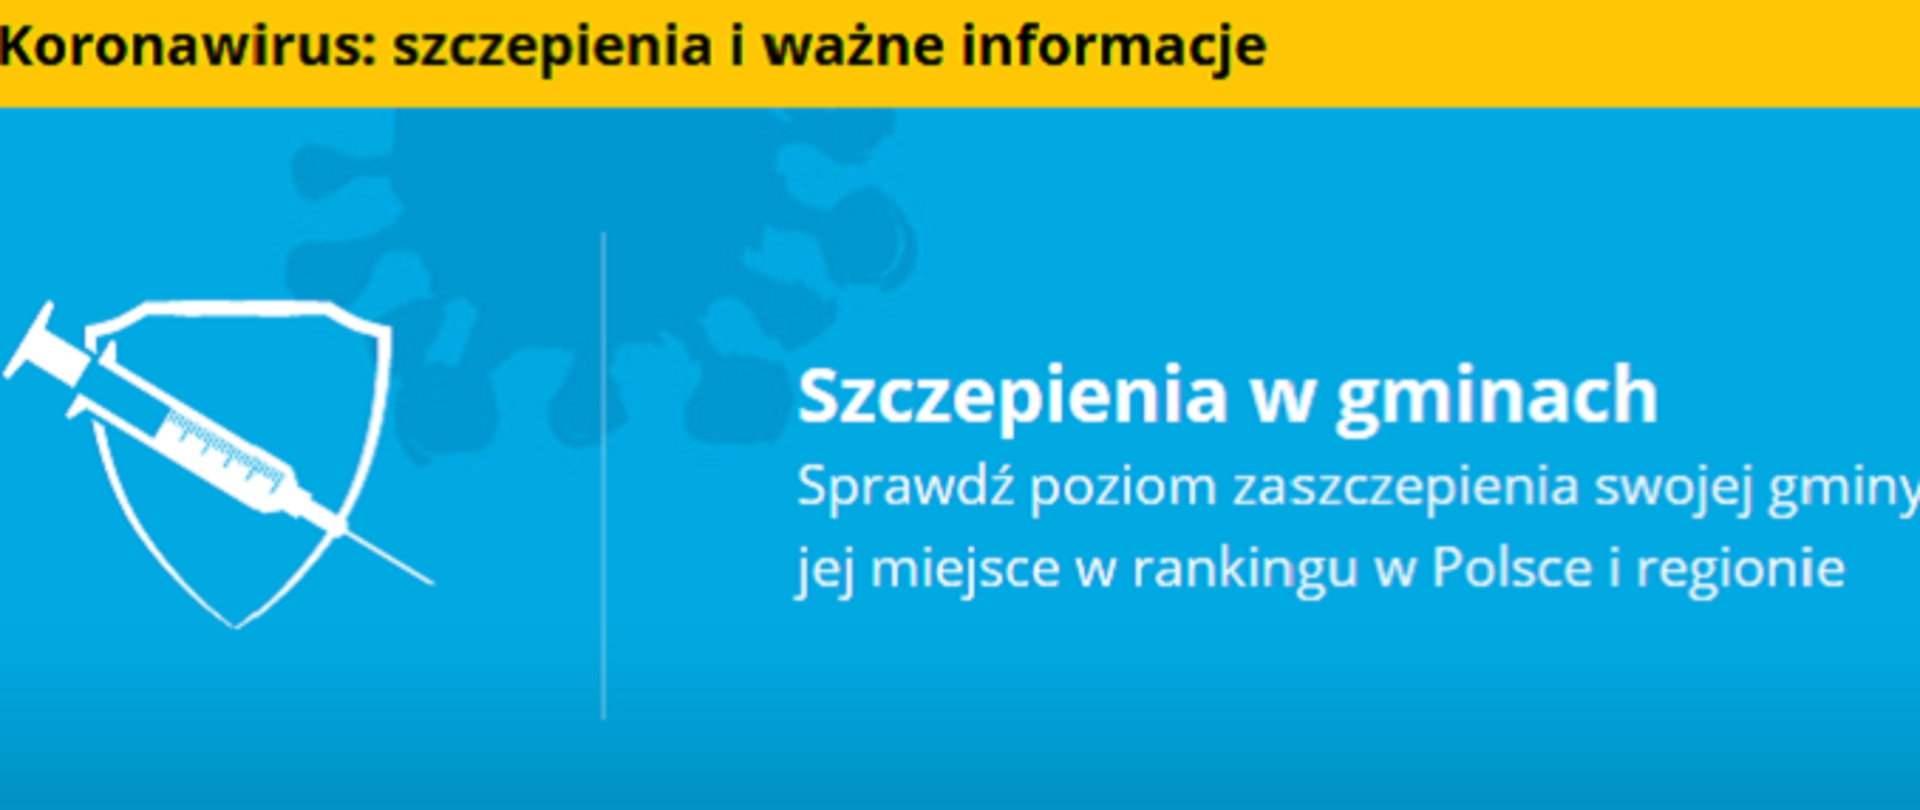 Zdjęcie przedstawia biały napis na niebieskim tle: "Szczepienia w gminach Sprawdź poziom zaszczepienia swojej gminy oraz miejsce w rankingu w Polsce i regionie